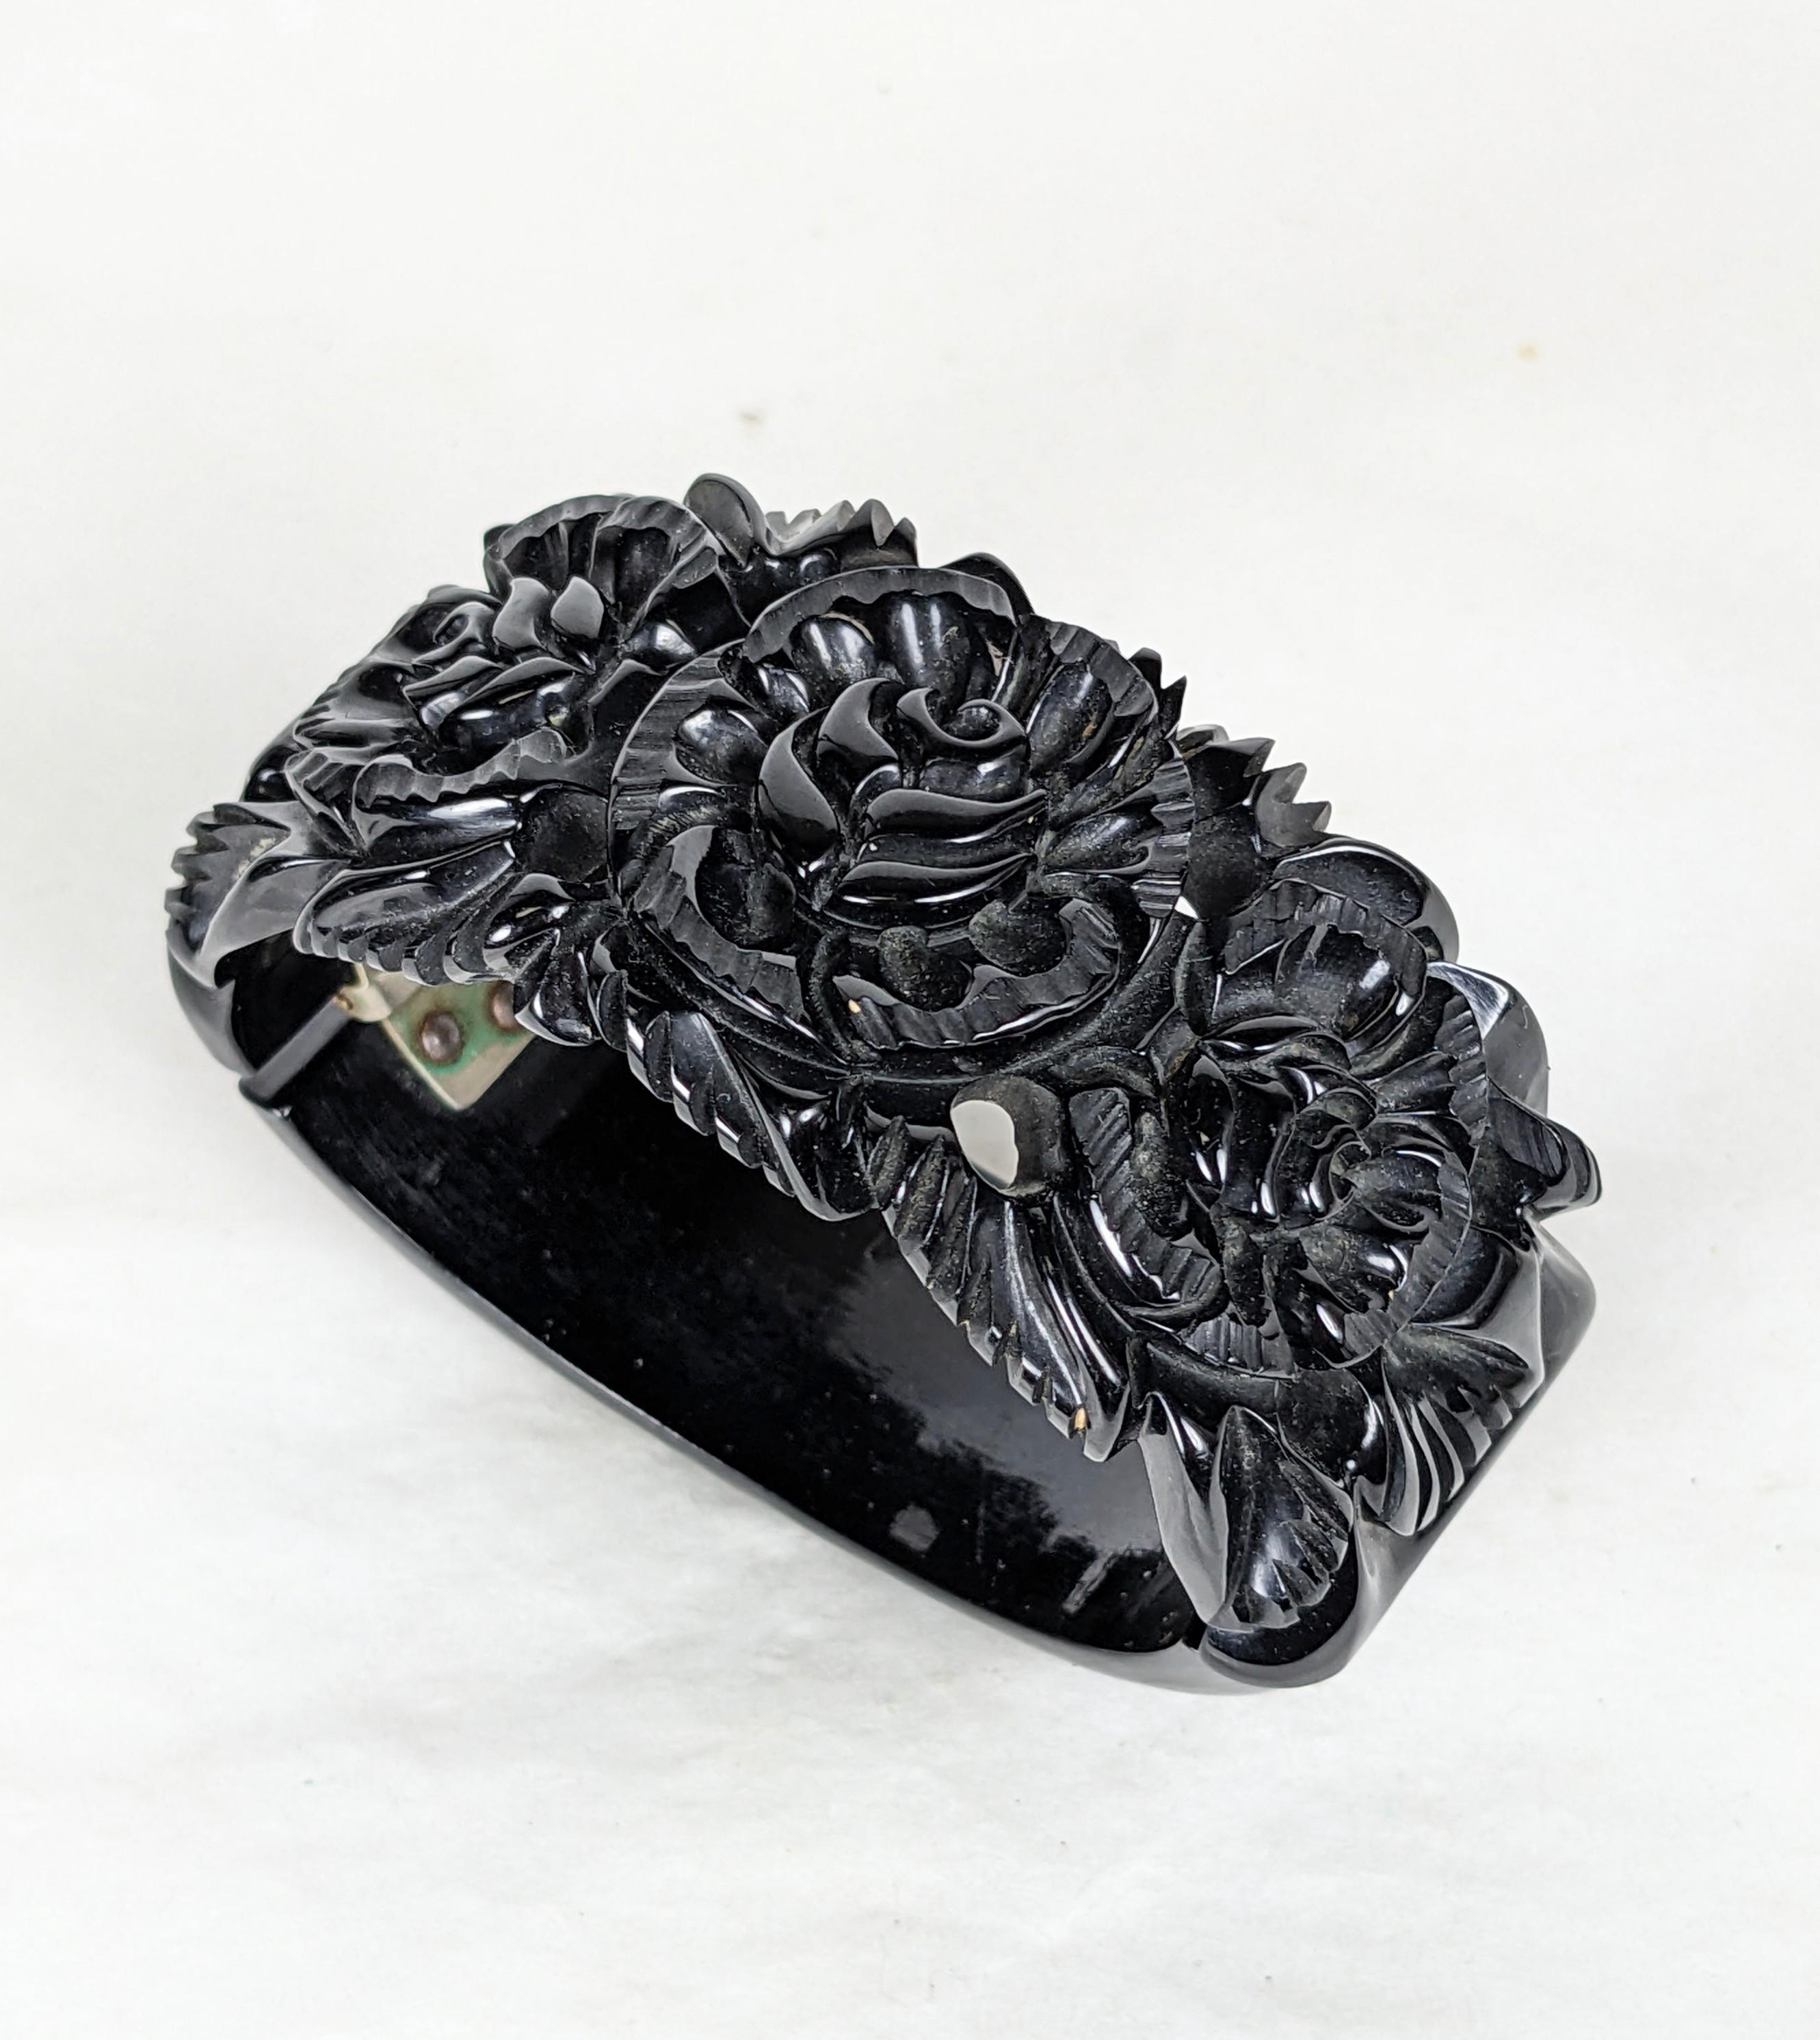 Art Deco geschnitzt Bakelit Clamper Manschette aus den 1930er Jahren. Handgeschnitztes schwarzes Bakelit mit verschnörkelten Rosen- und Blattmotiven. Federverschluss. 1,25